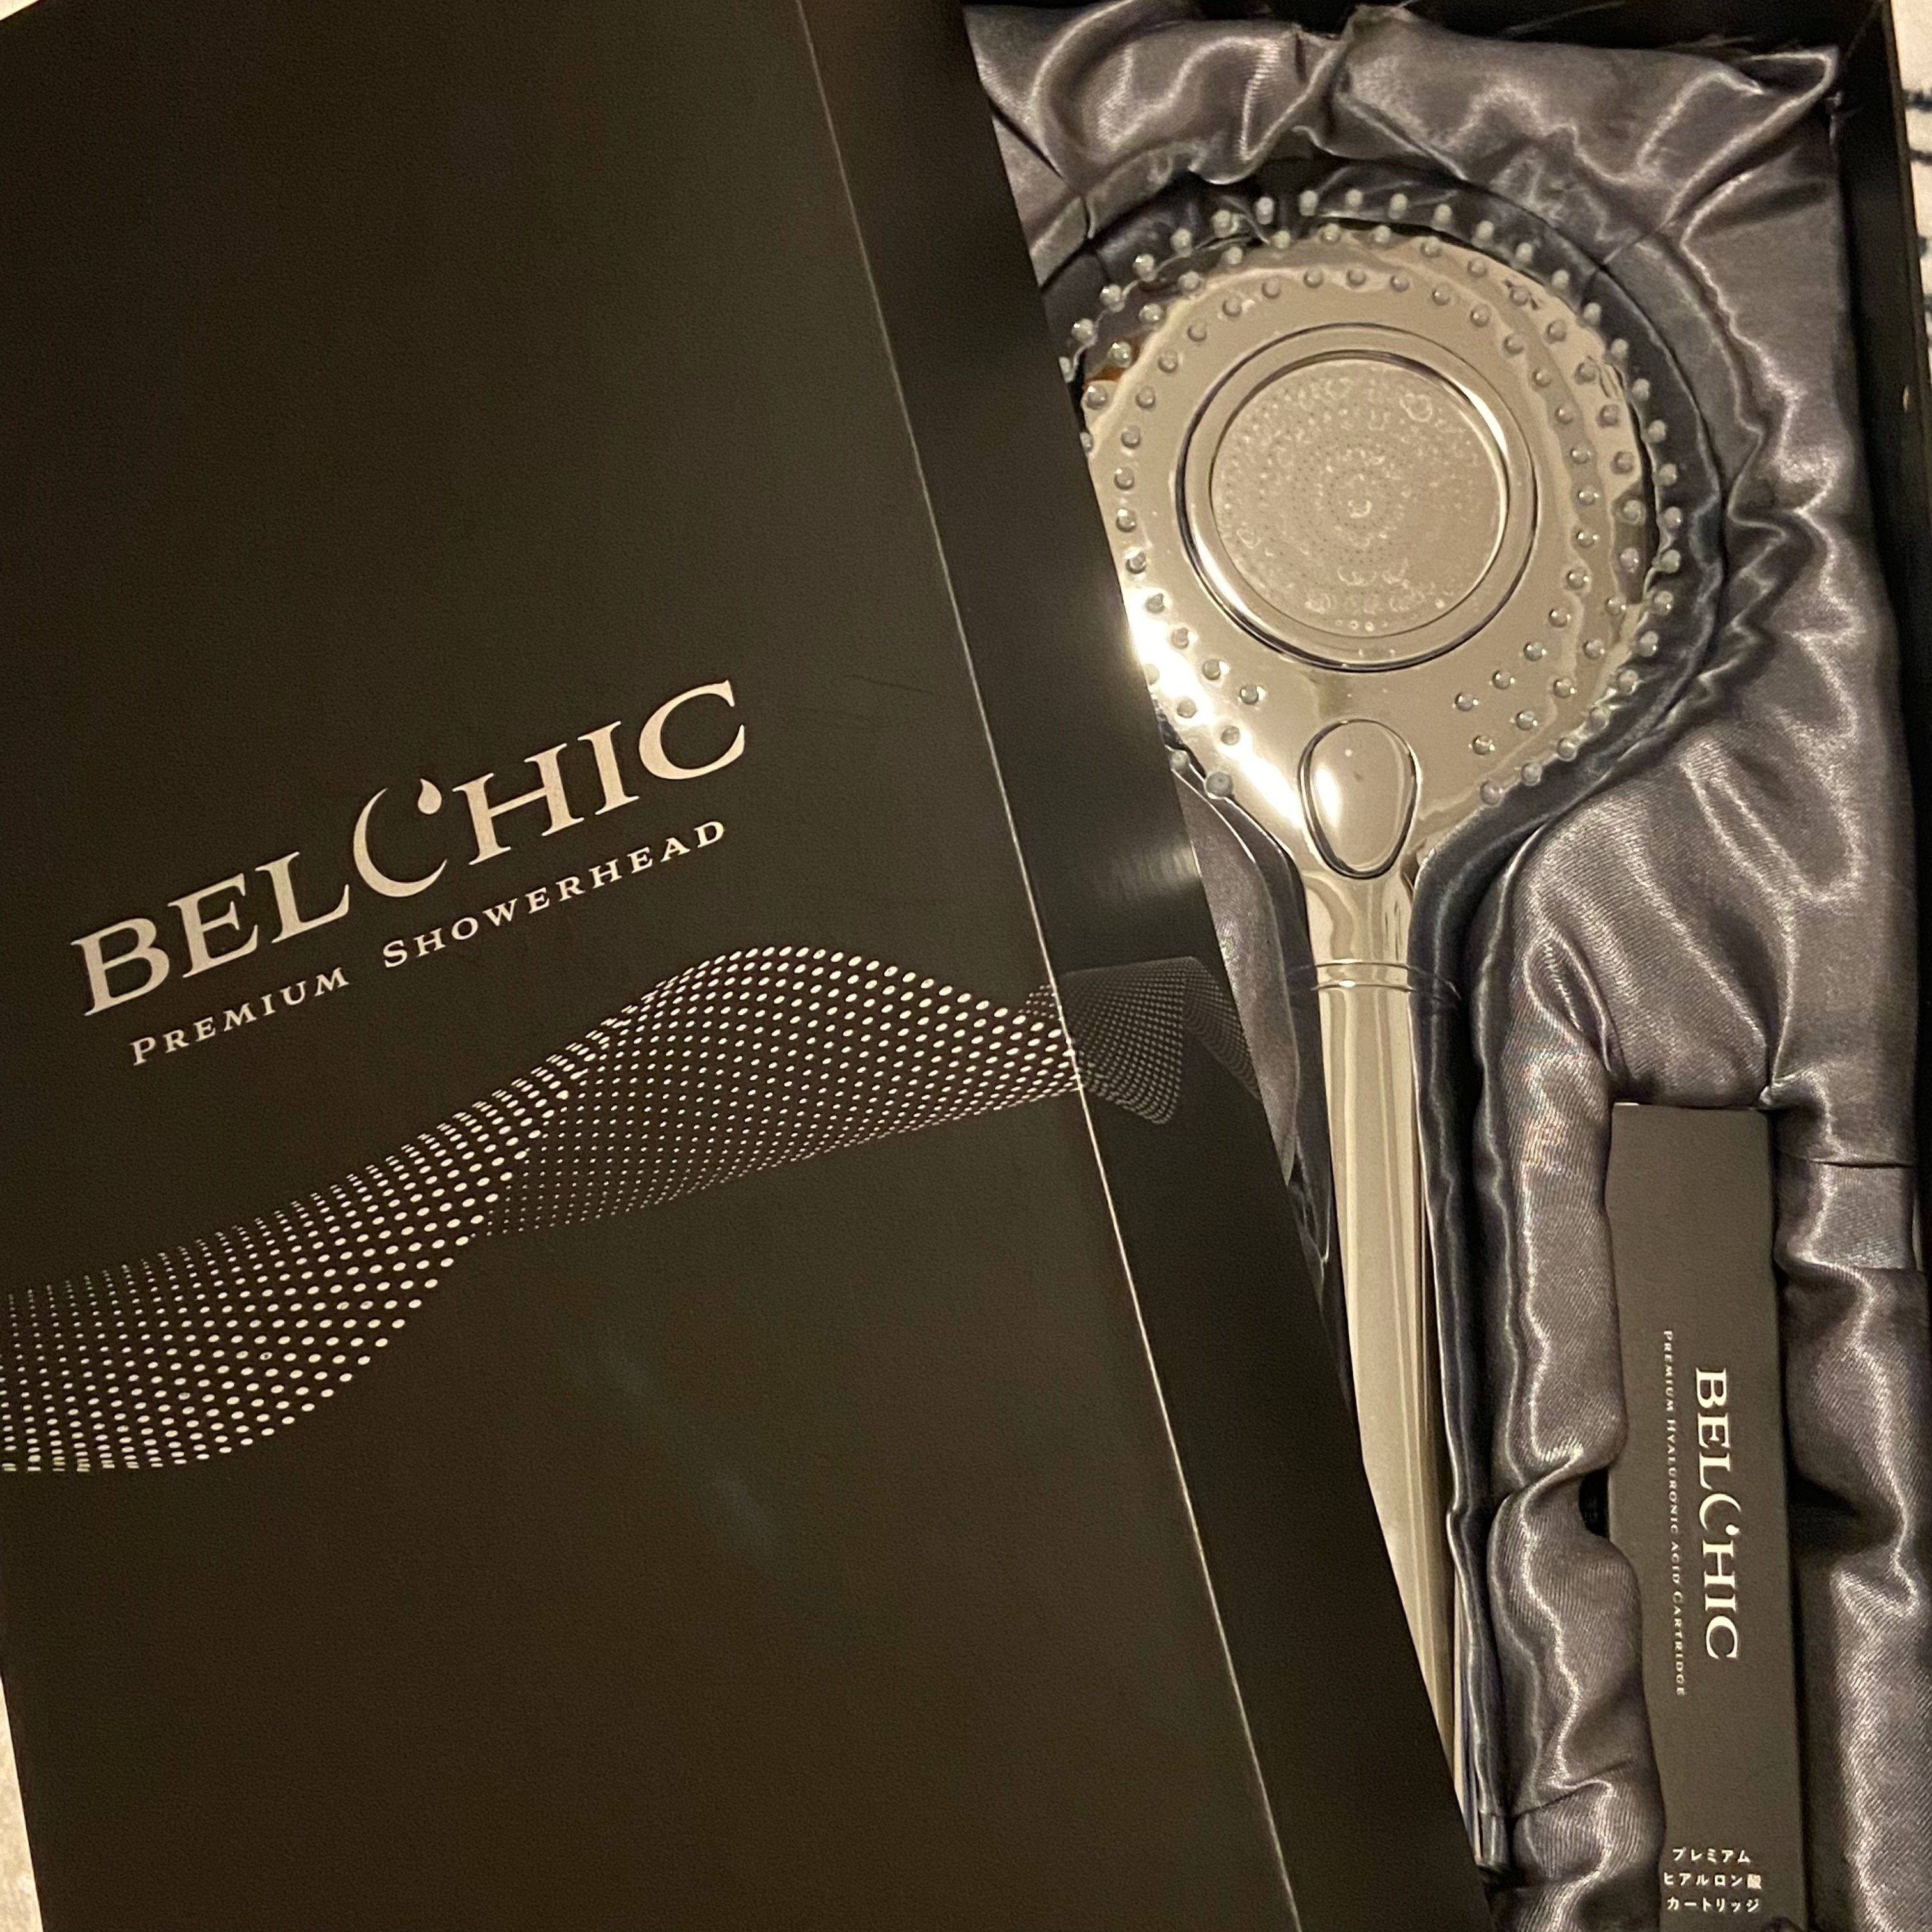 贅沢屋の Belchic Premium Showerhead thecarestaff.com